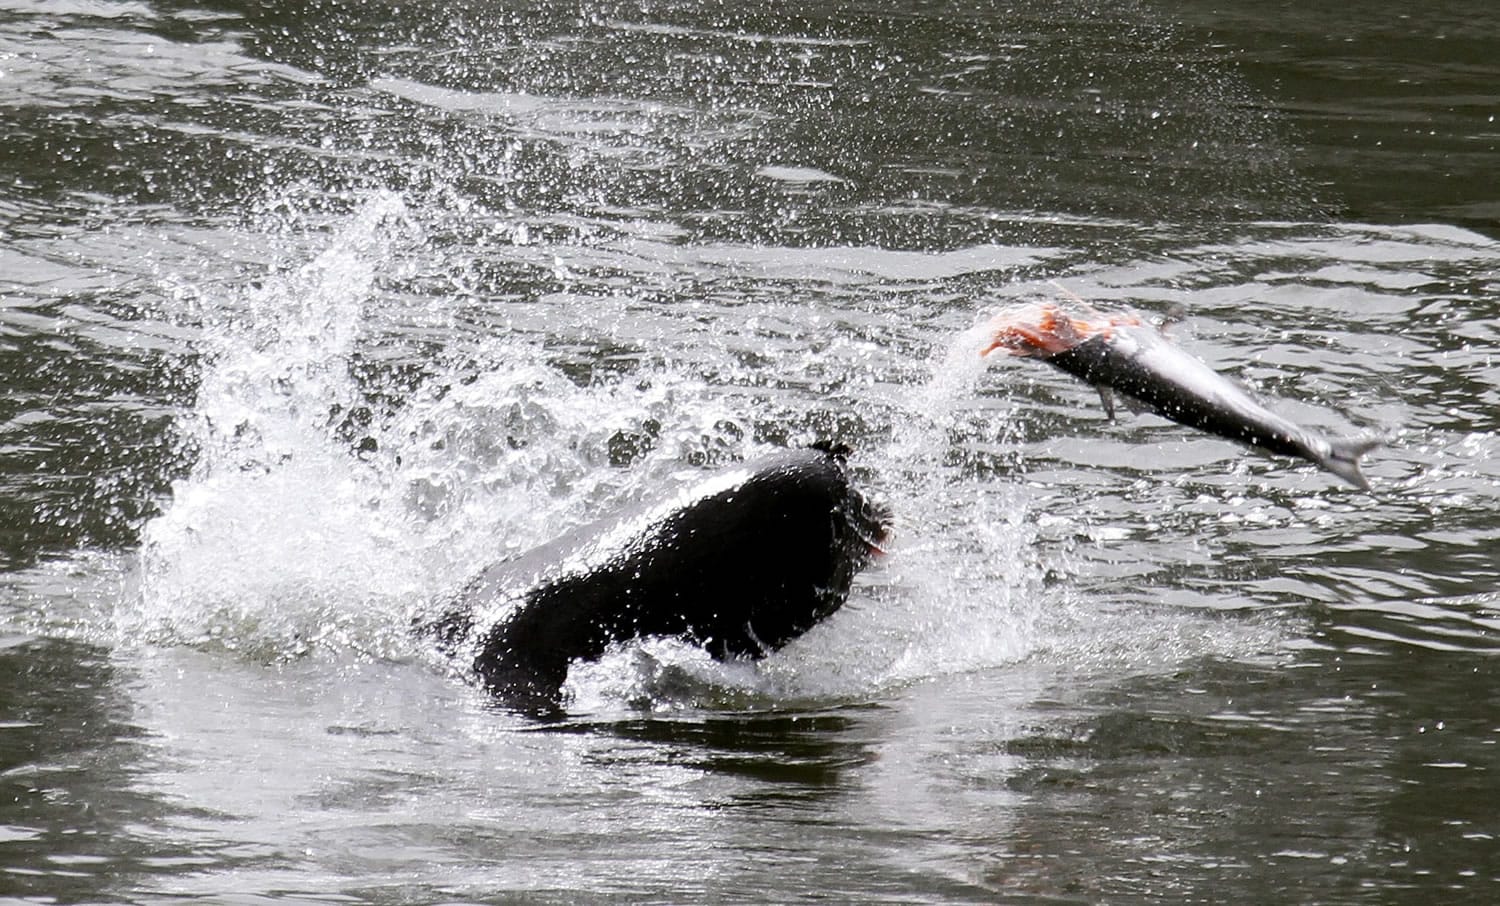 A sea lion kills a salmon downstream of Bonneville Dam in the Columbia River.